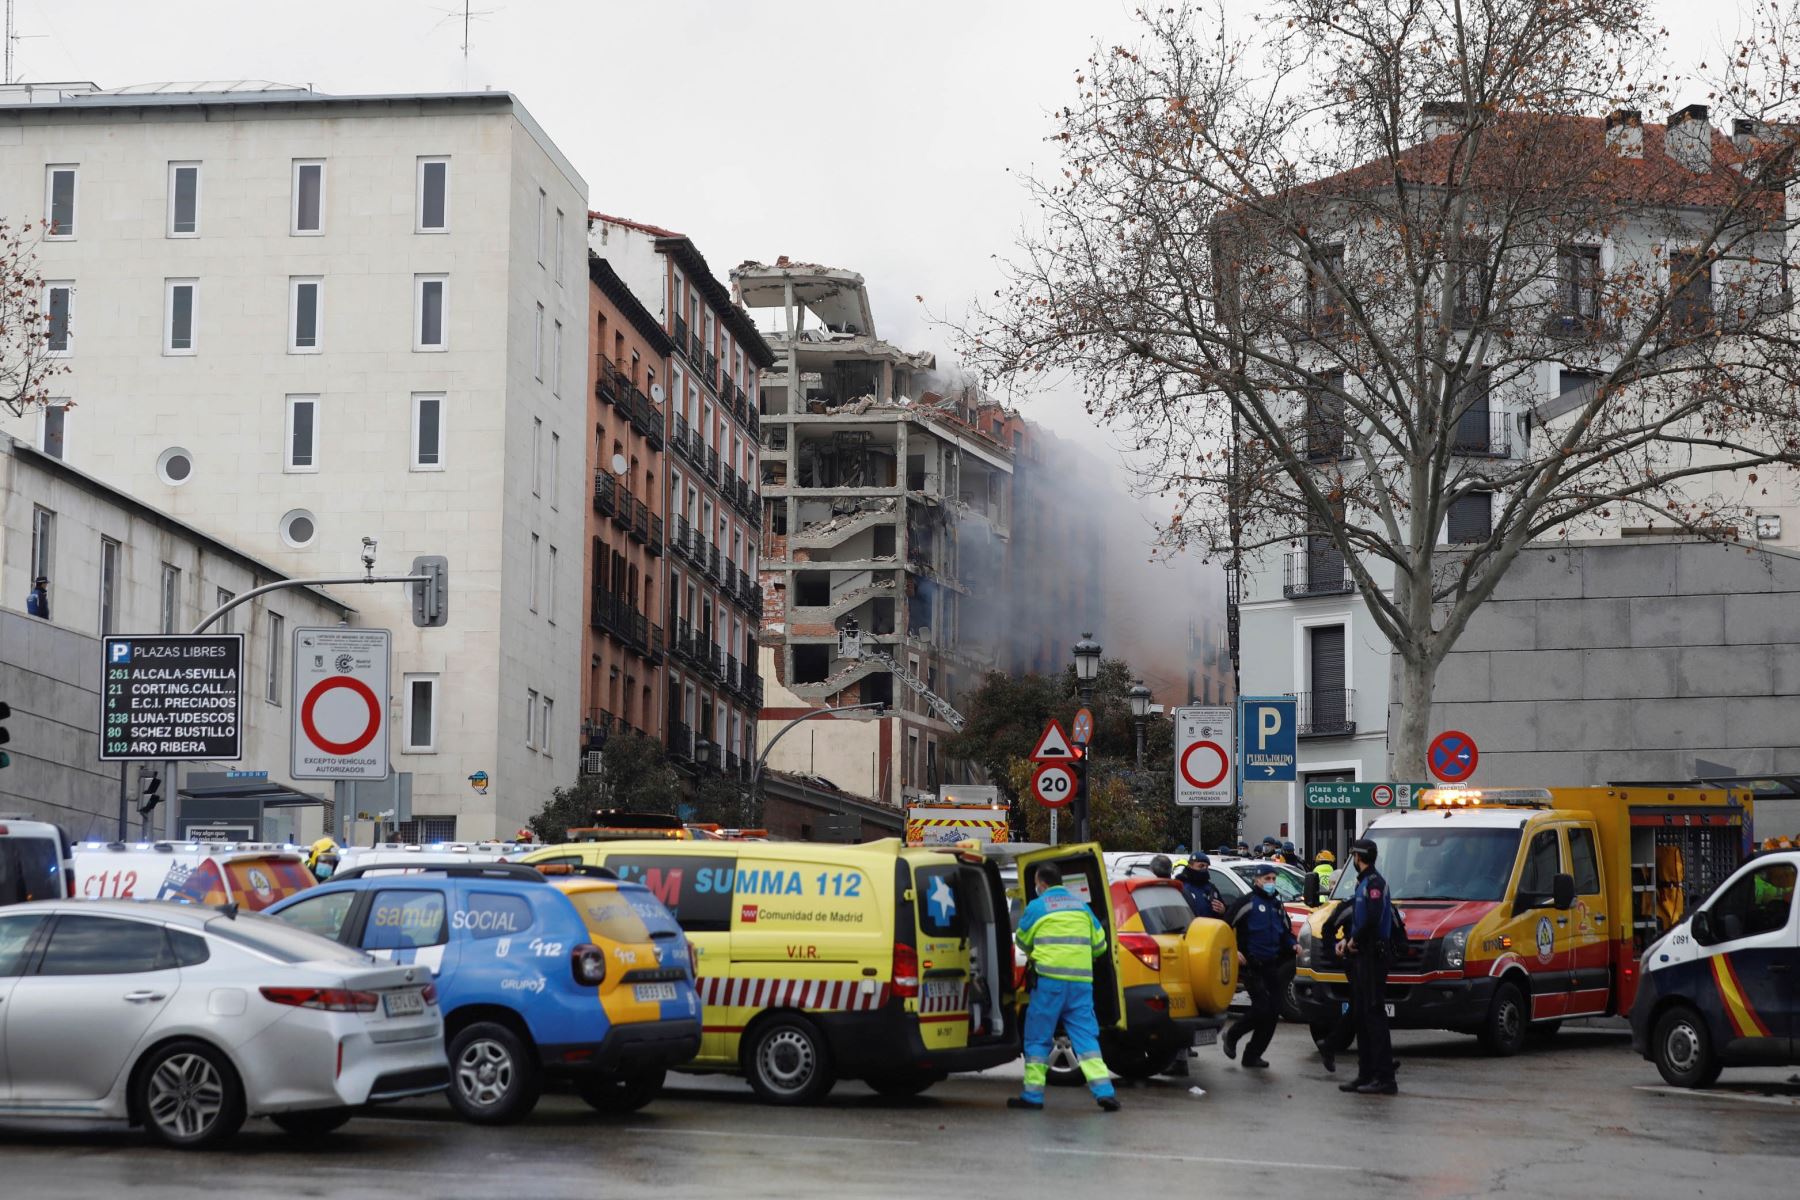 Al menos tres personas han muerto tras la explosión que ha provocado el derrumbe de parte de un edificio de seis plantas en la calle Toledo, en el centro de Madrid. Foto: EFE